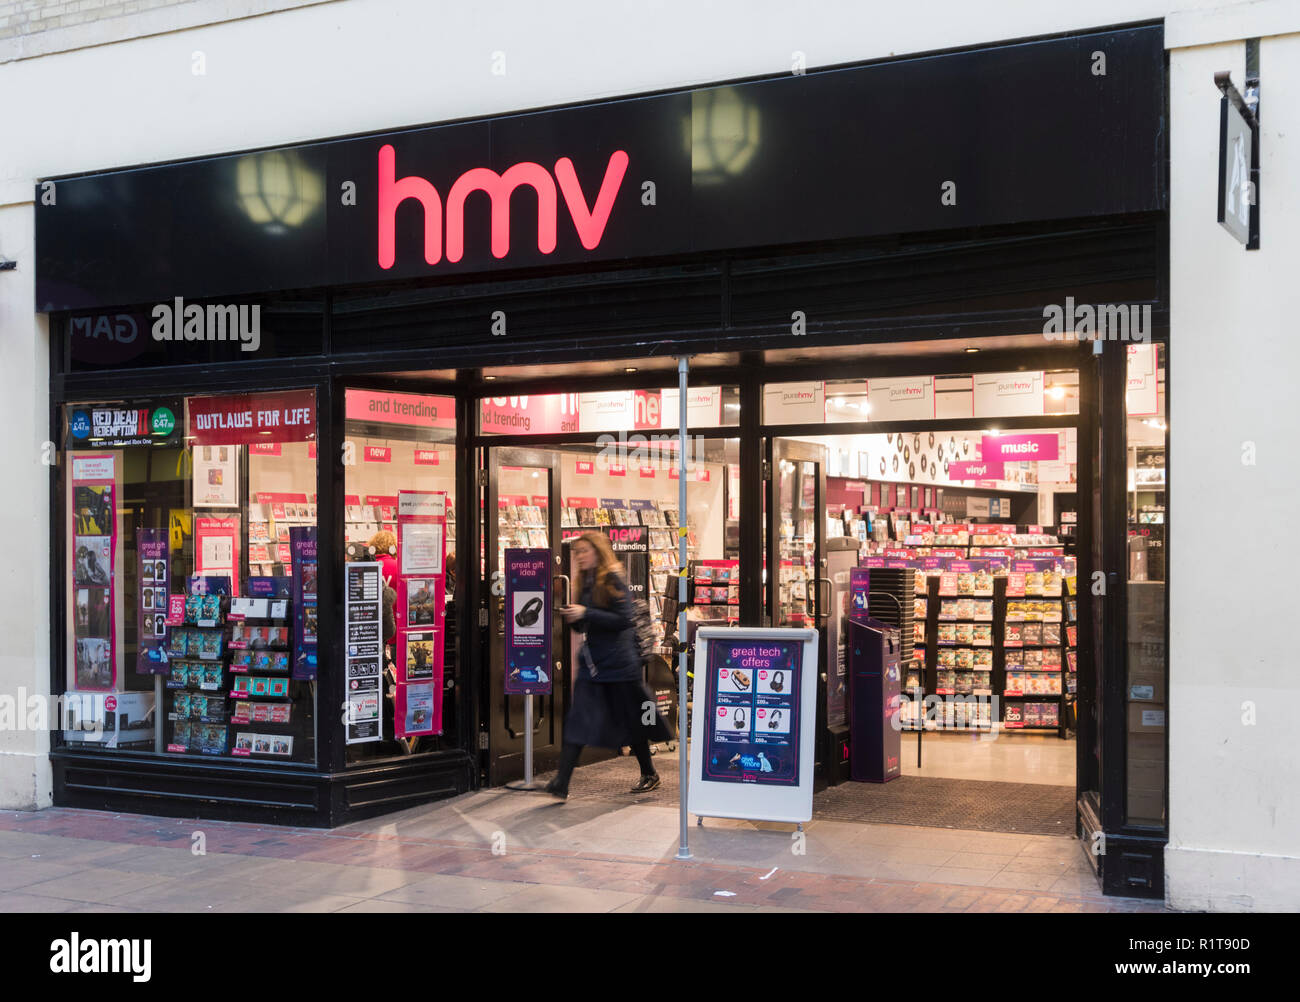 HMV boutique entrée avant à Worthing, West Sussex, Angleterre, Royaume-Uni. Magasin de vente au détail. Banque D'Images